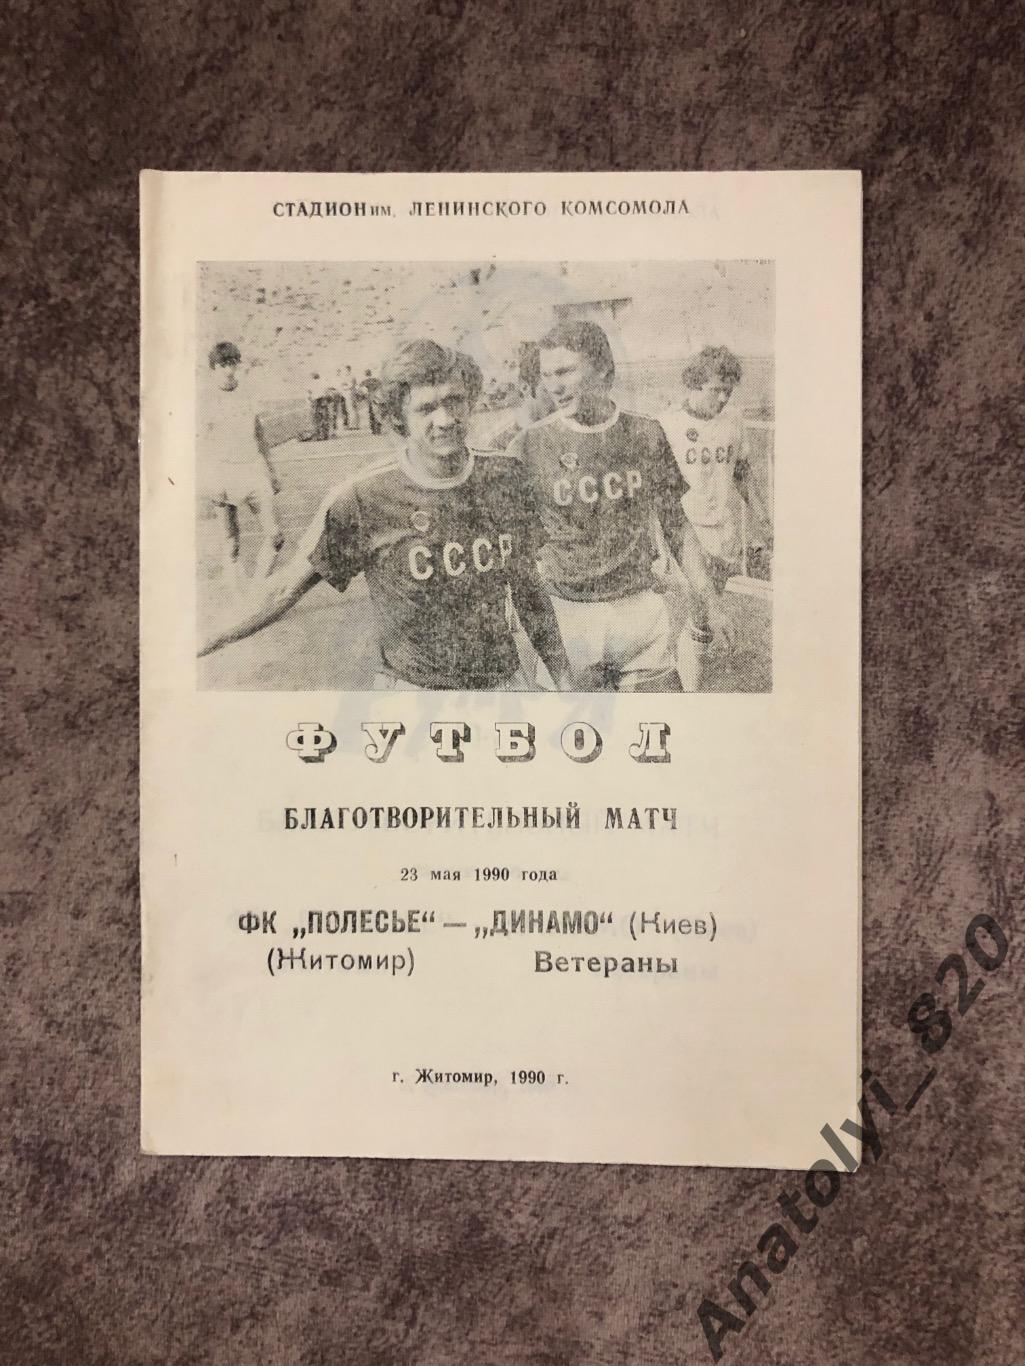 Полесье Житомир - Динамо Киев 1990 год, благотворительный матч